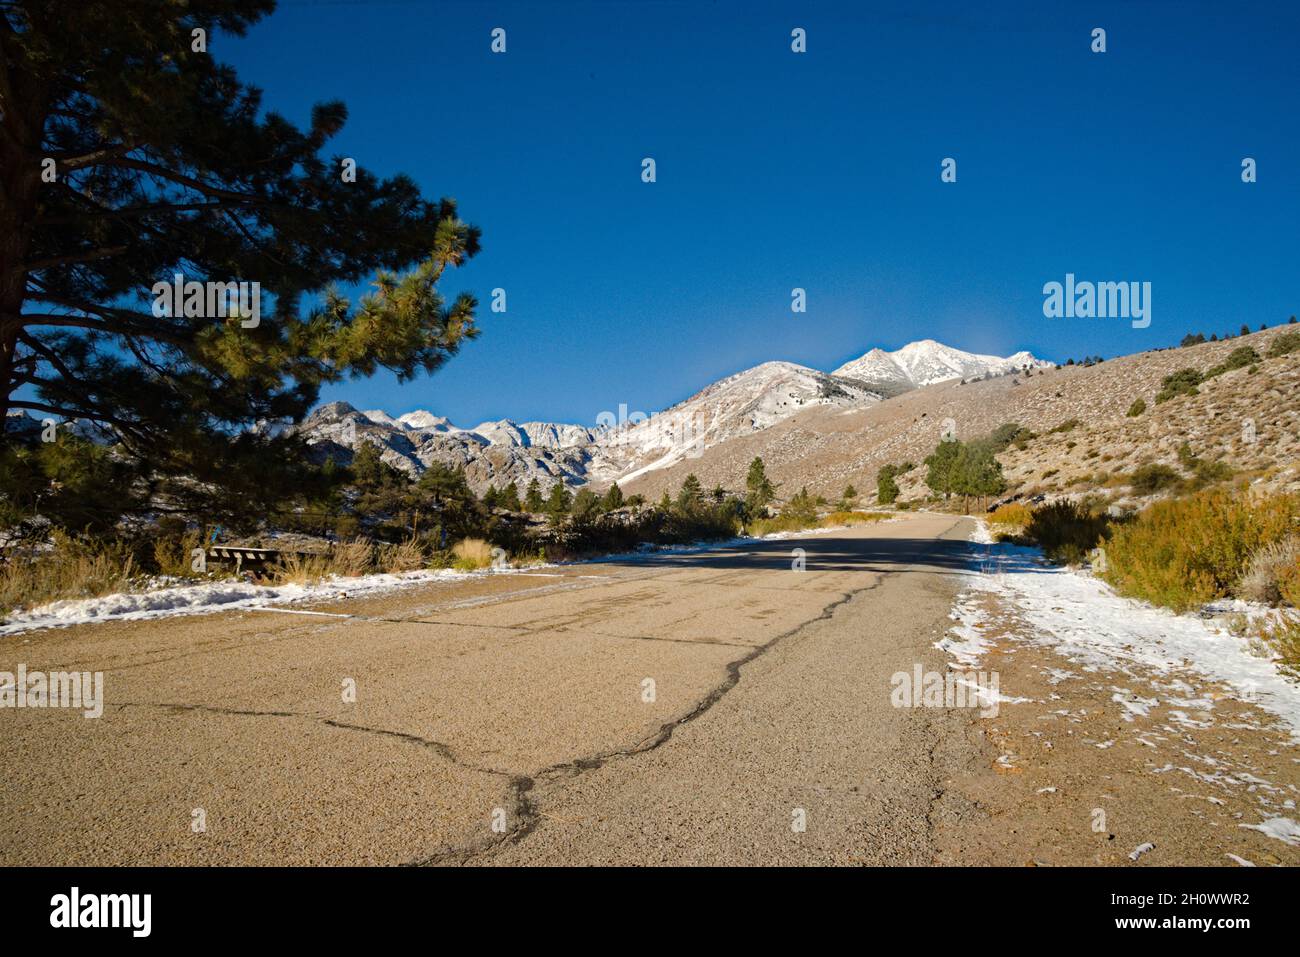 Belles montagnes de l'est de la Sierra après la récente tempête de neige, donnant un indice d'hiver est ici.Ligne de tête de route de montagne avec un immense pin aux montagnes. Banque D'Images